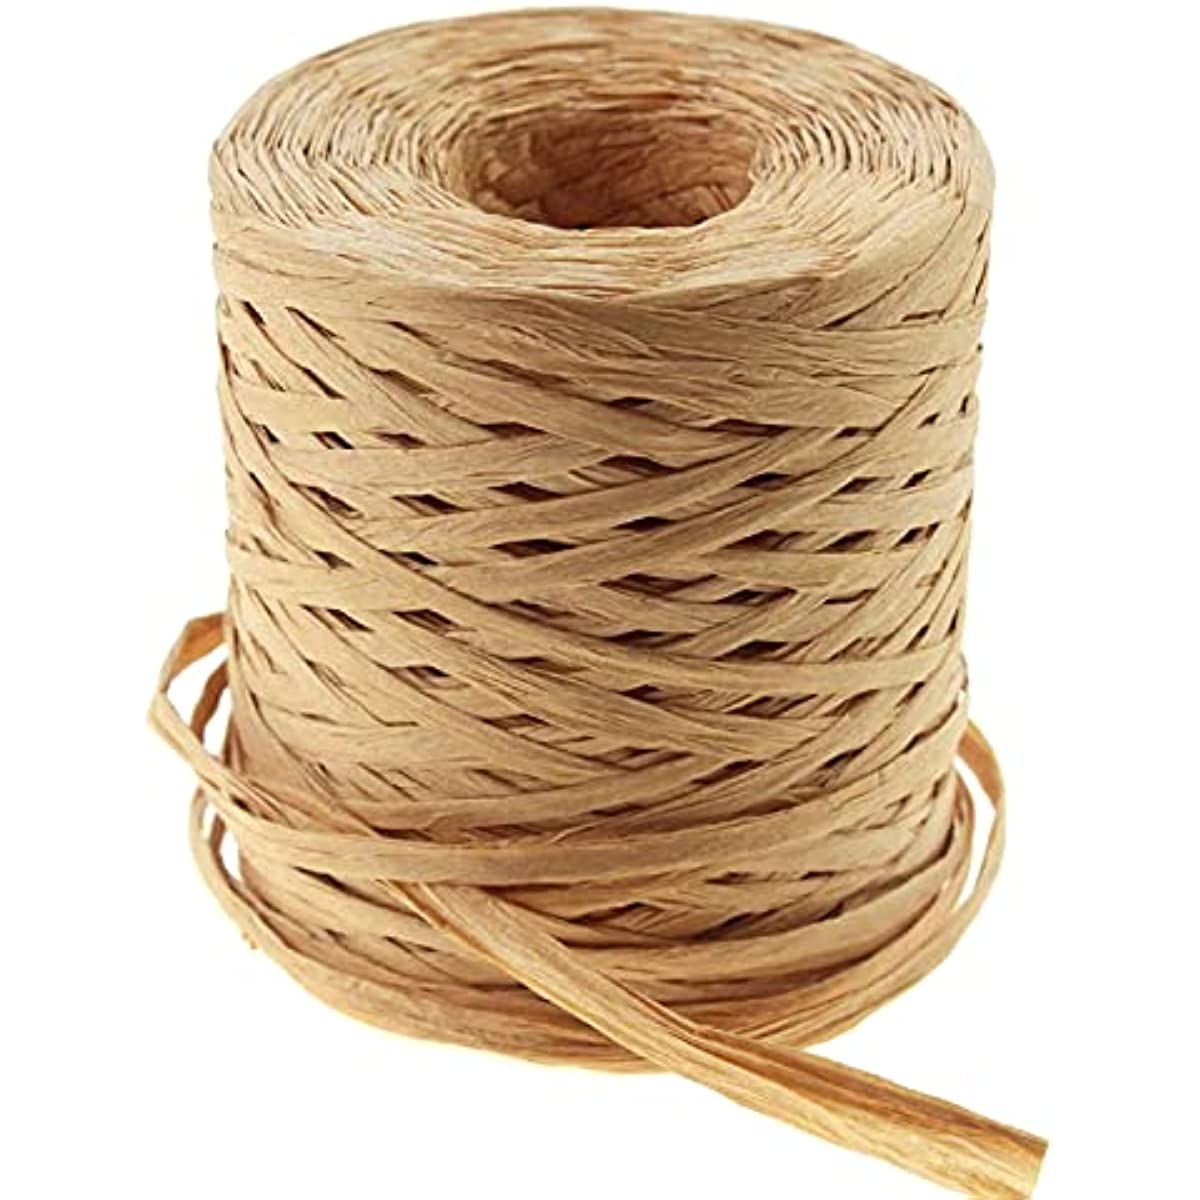 Anvin 2 rollos de cinta de papel de rafia natural, cordel mate, cinta de  rafia, cuerda decorativa para envoltura de regalos, manualidades y  bricolaje